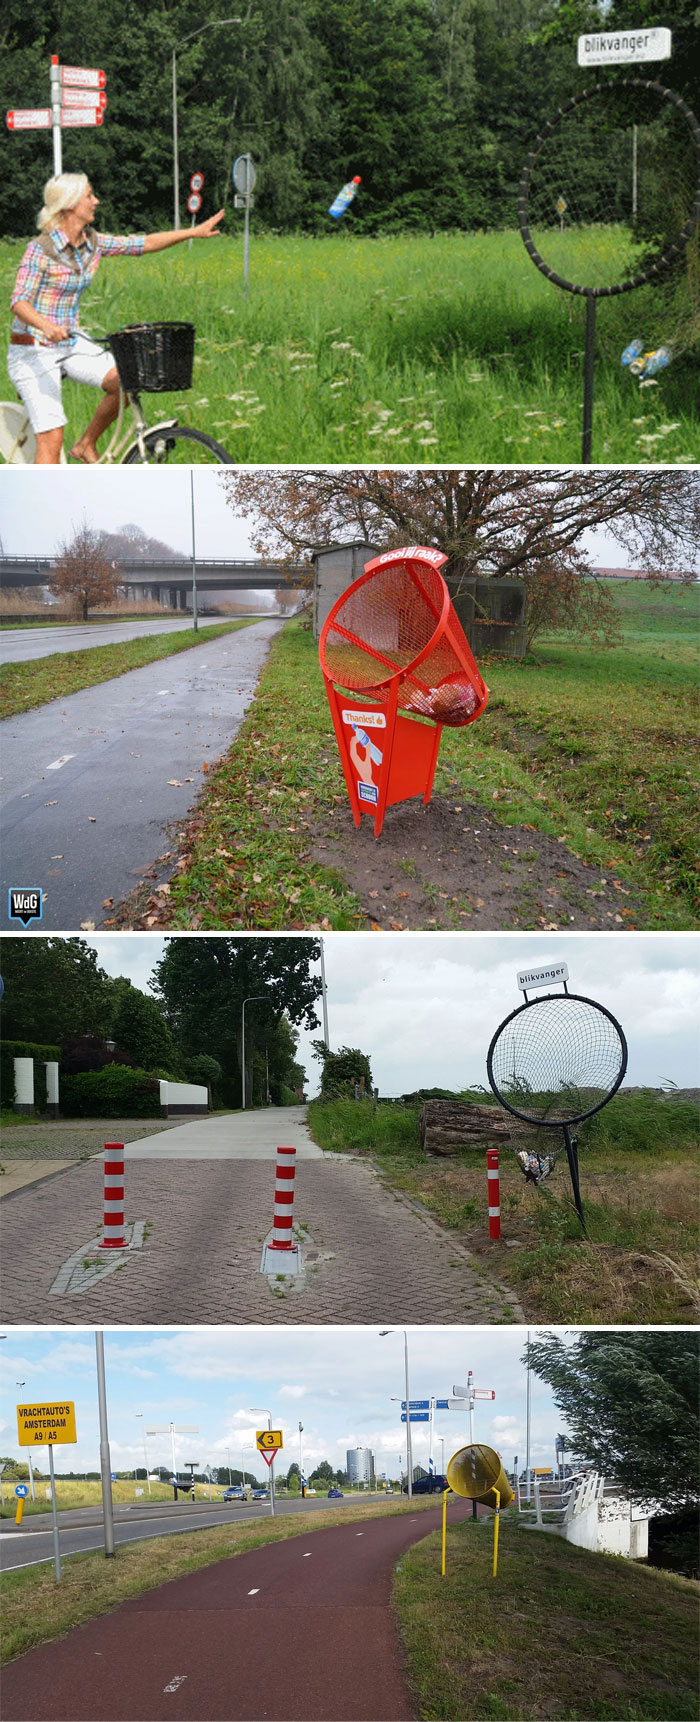 Contenedores de basura para ciclistas (Blikvanger), Países Bajos